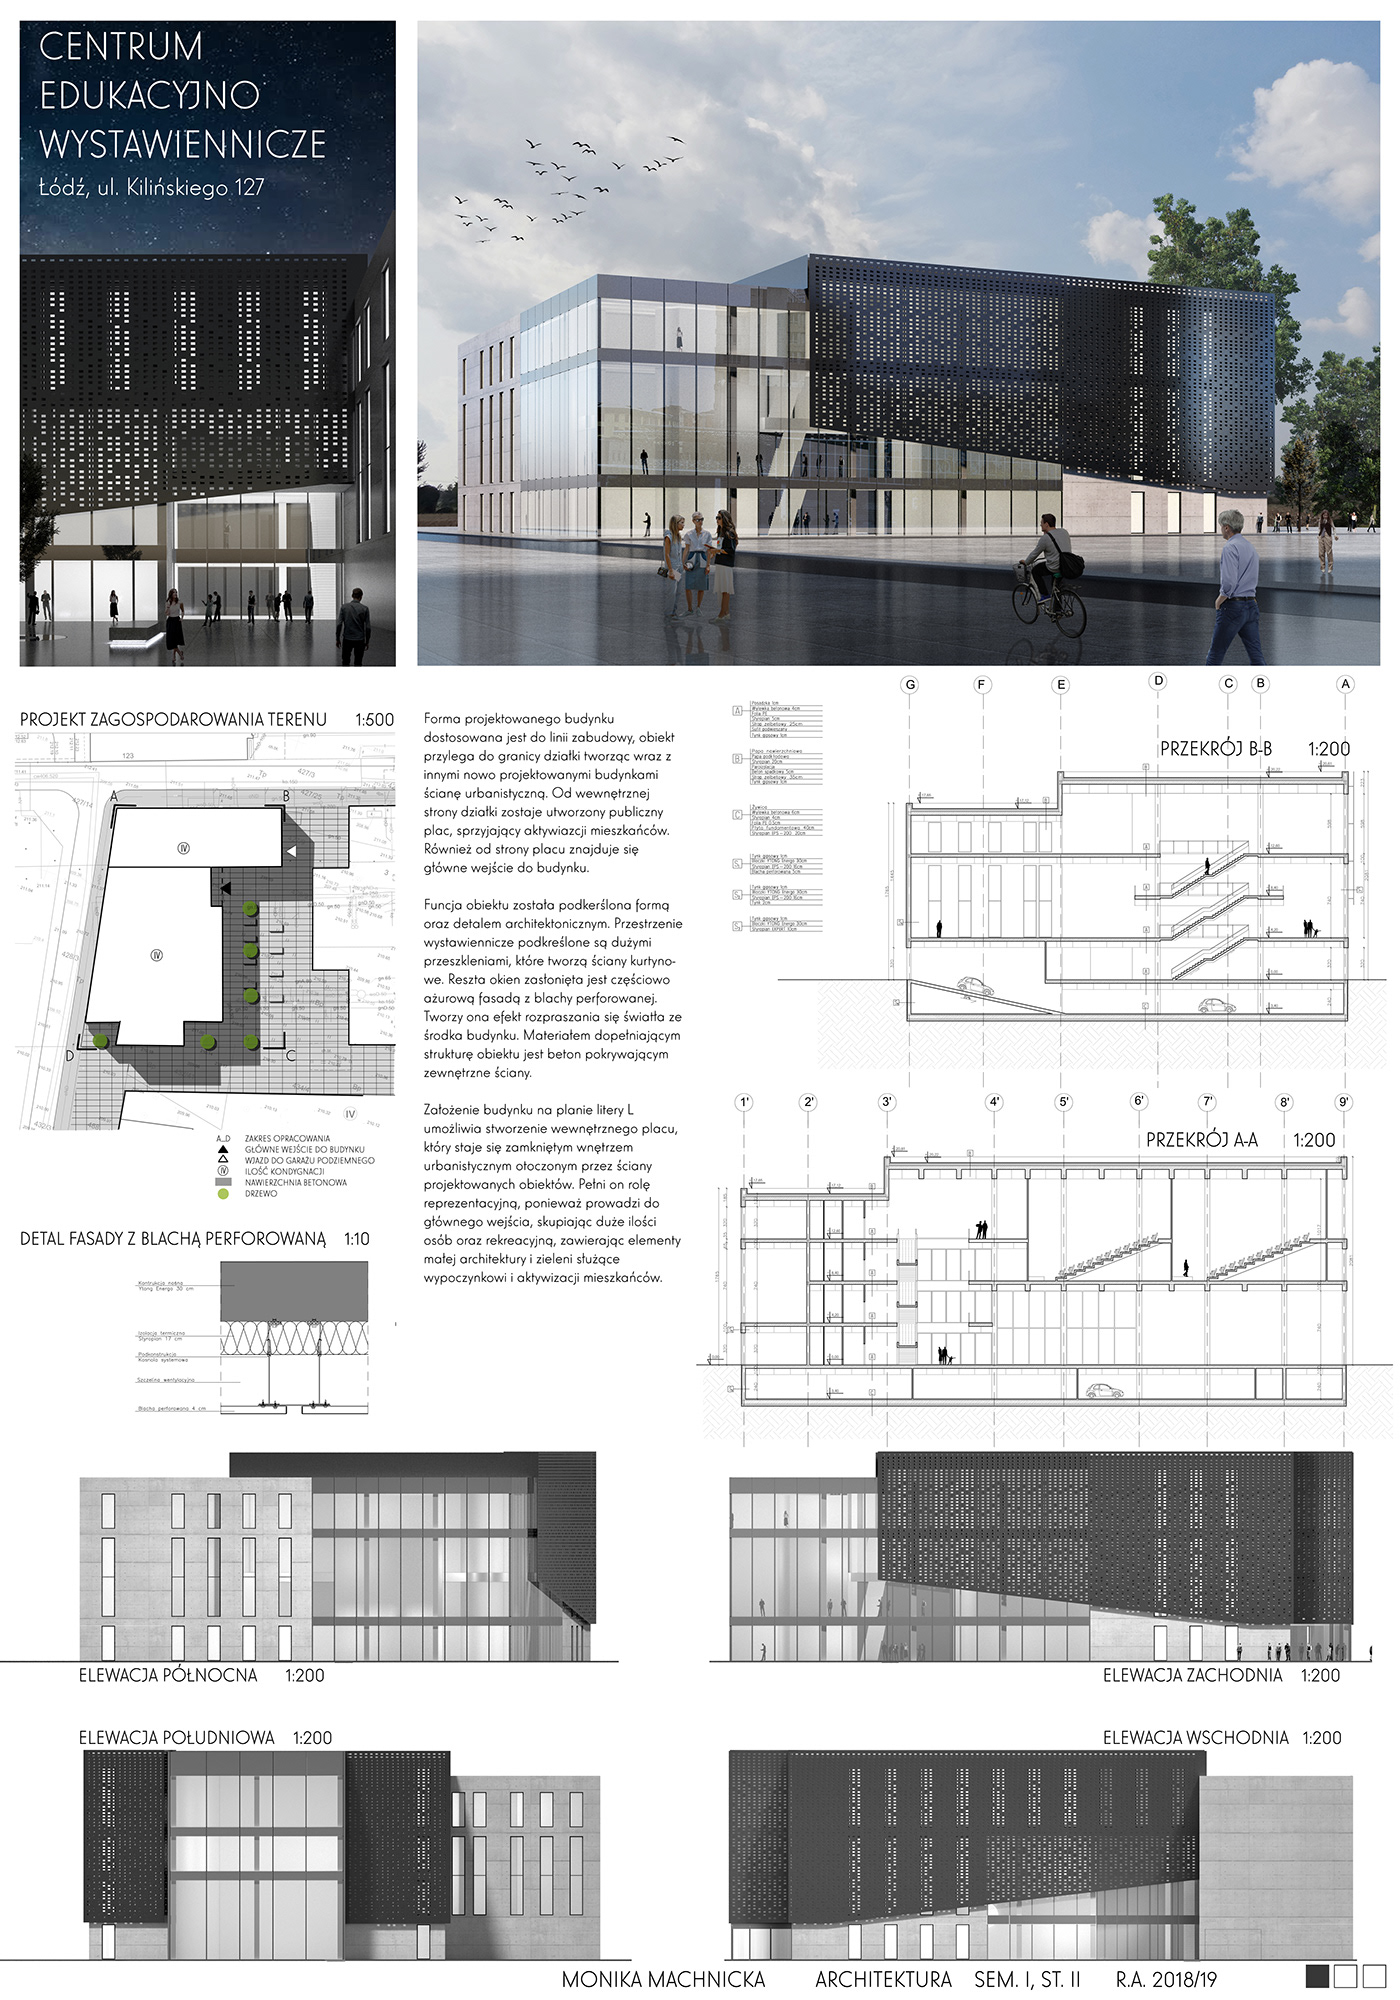 Exhibition Centre museum architecture Project building Public Architecture design łódź